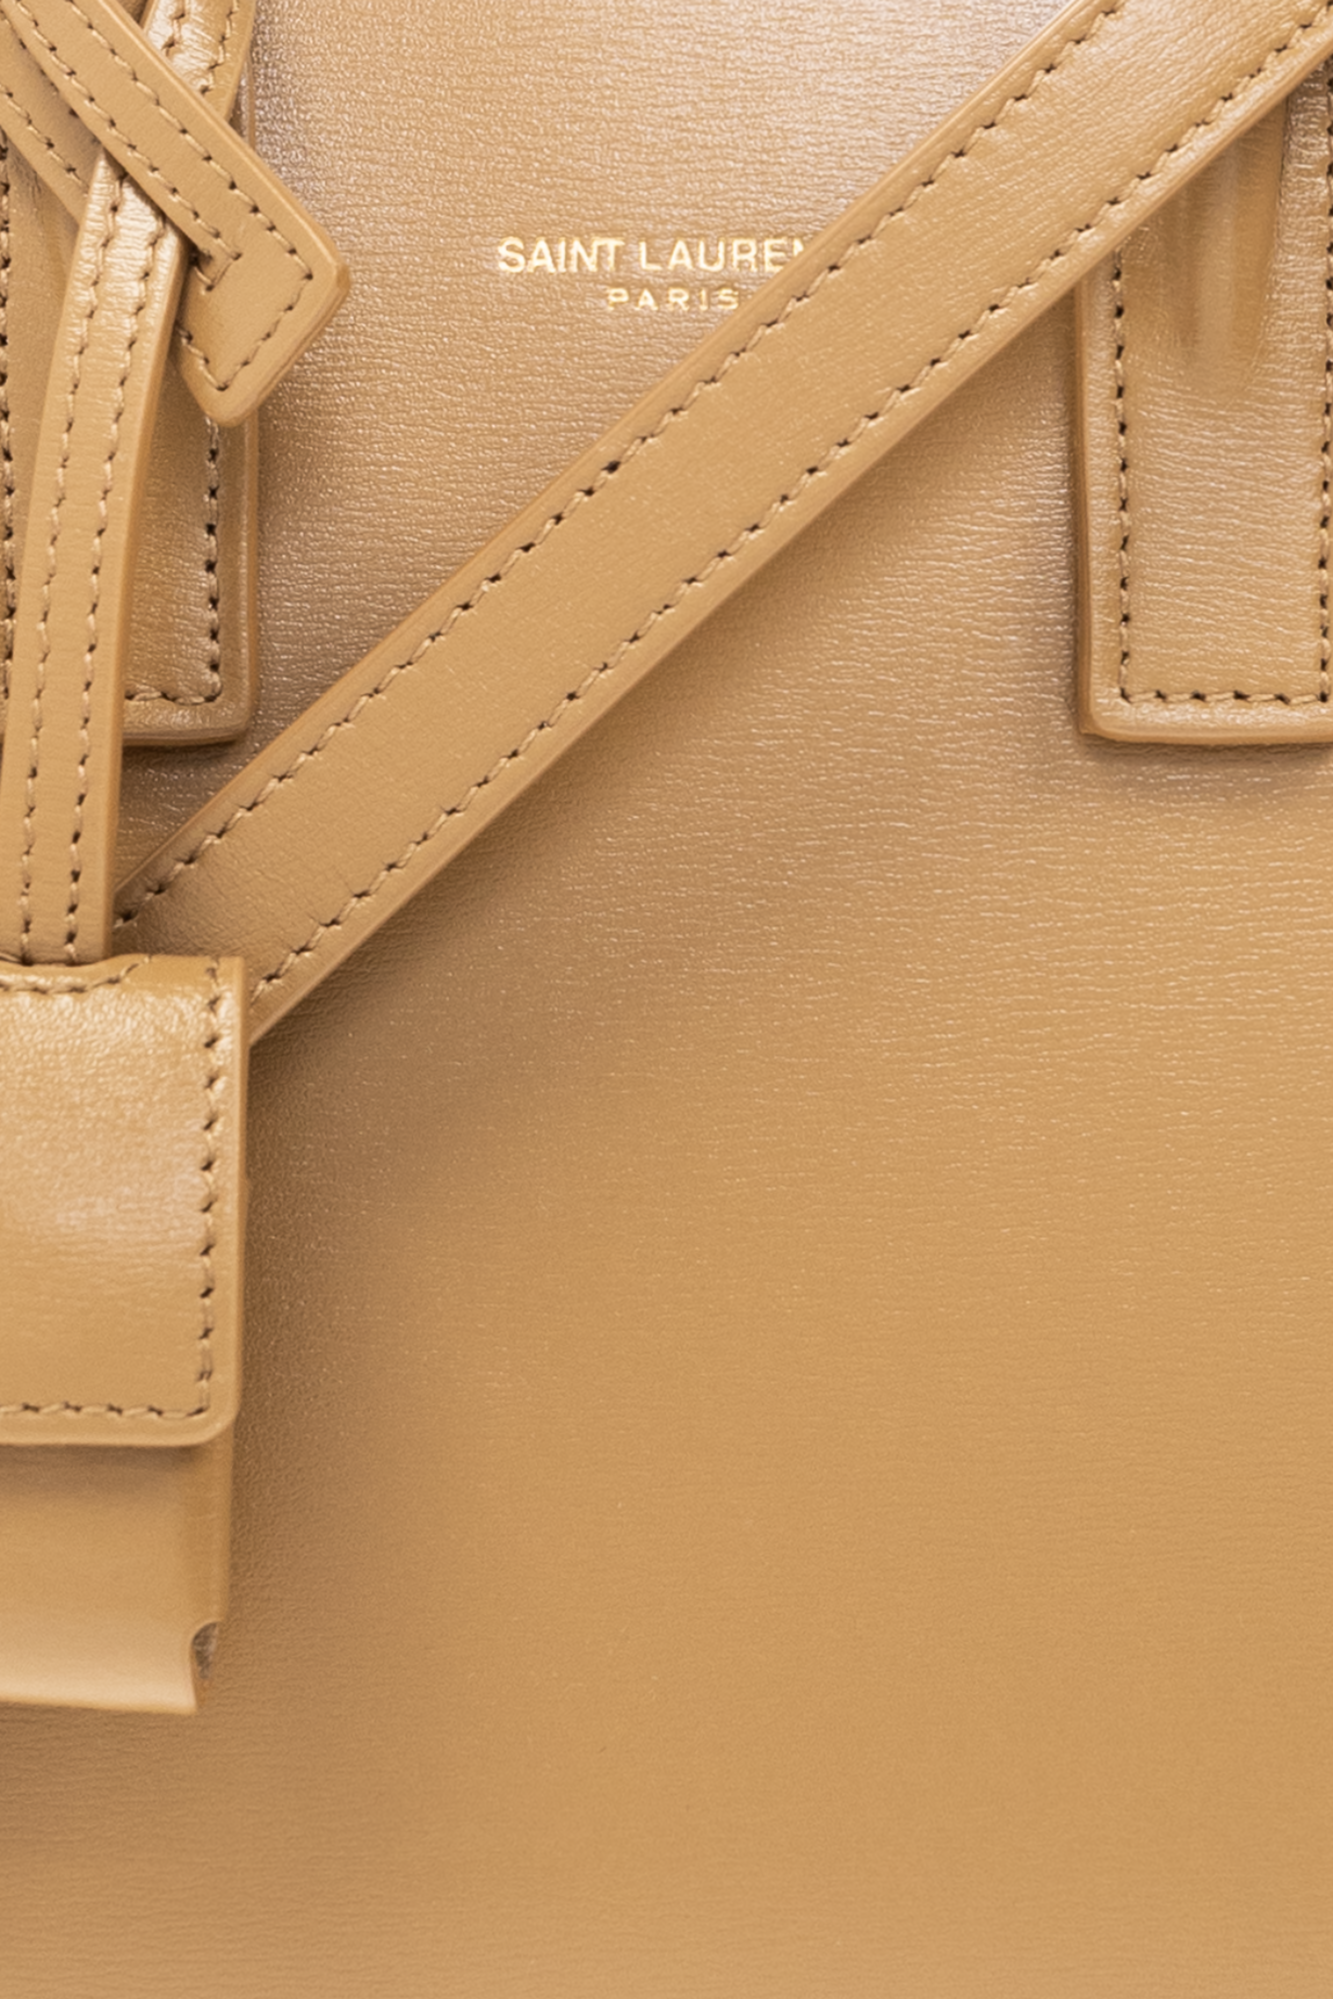 Louis Vuitton Noé Handbag 395039